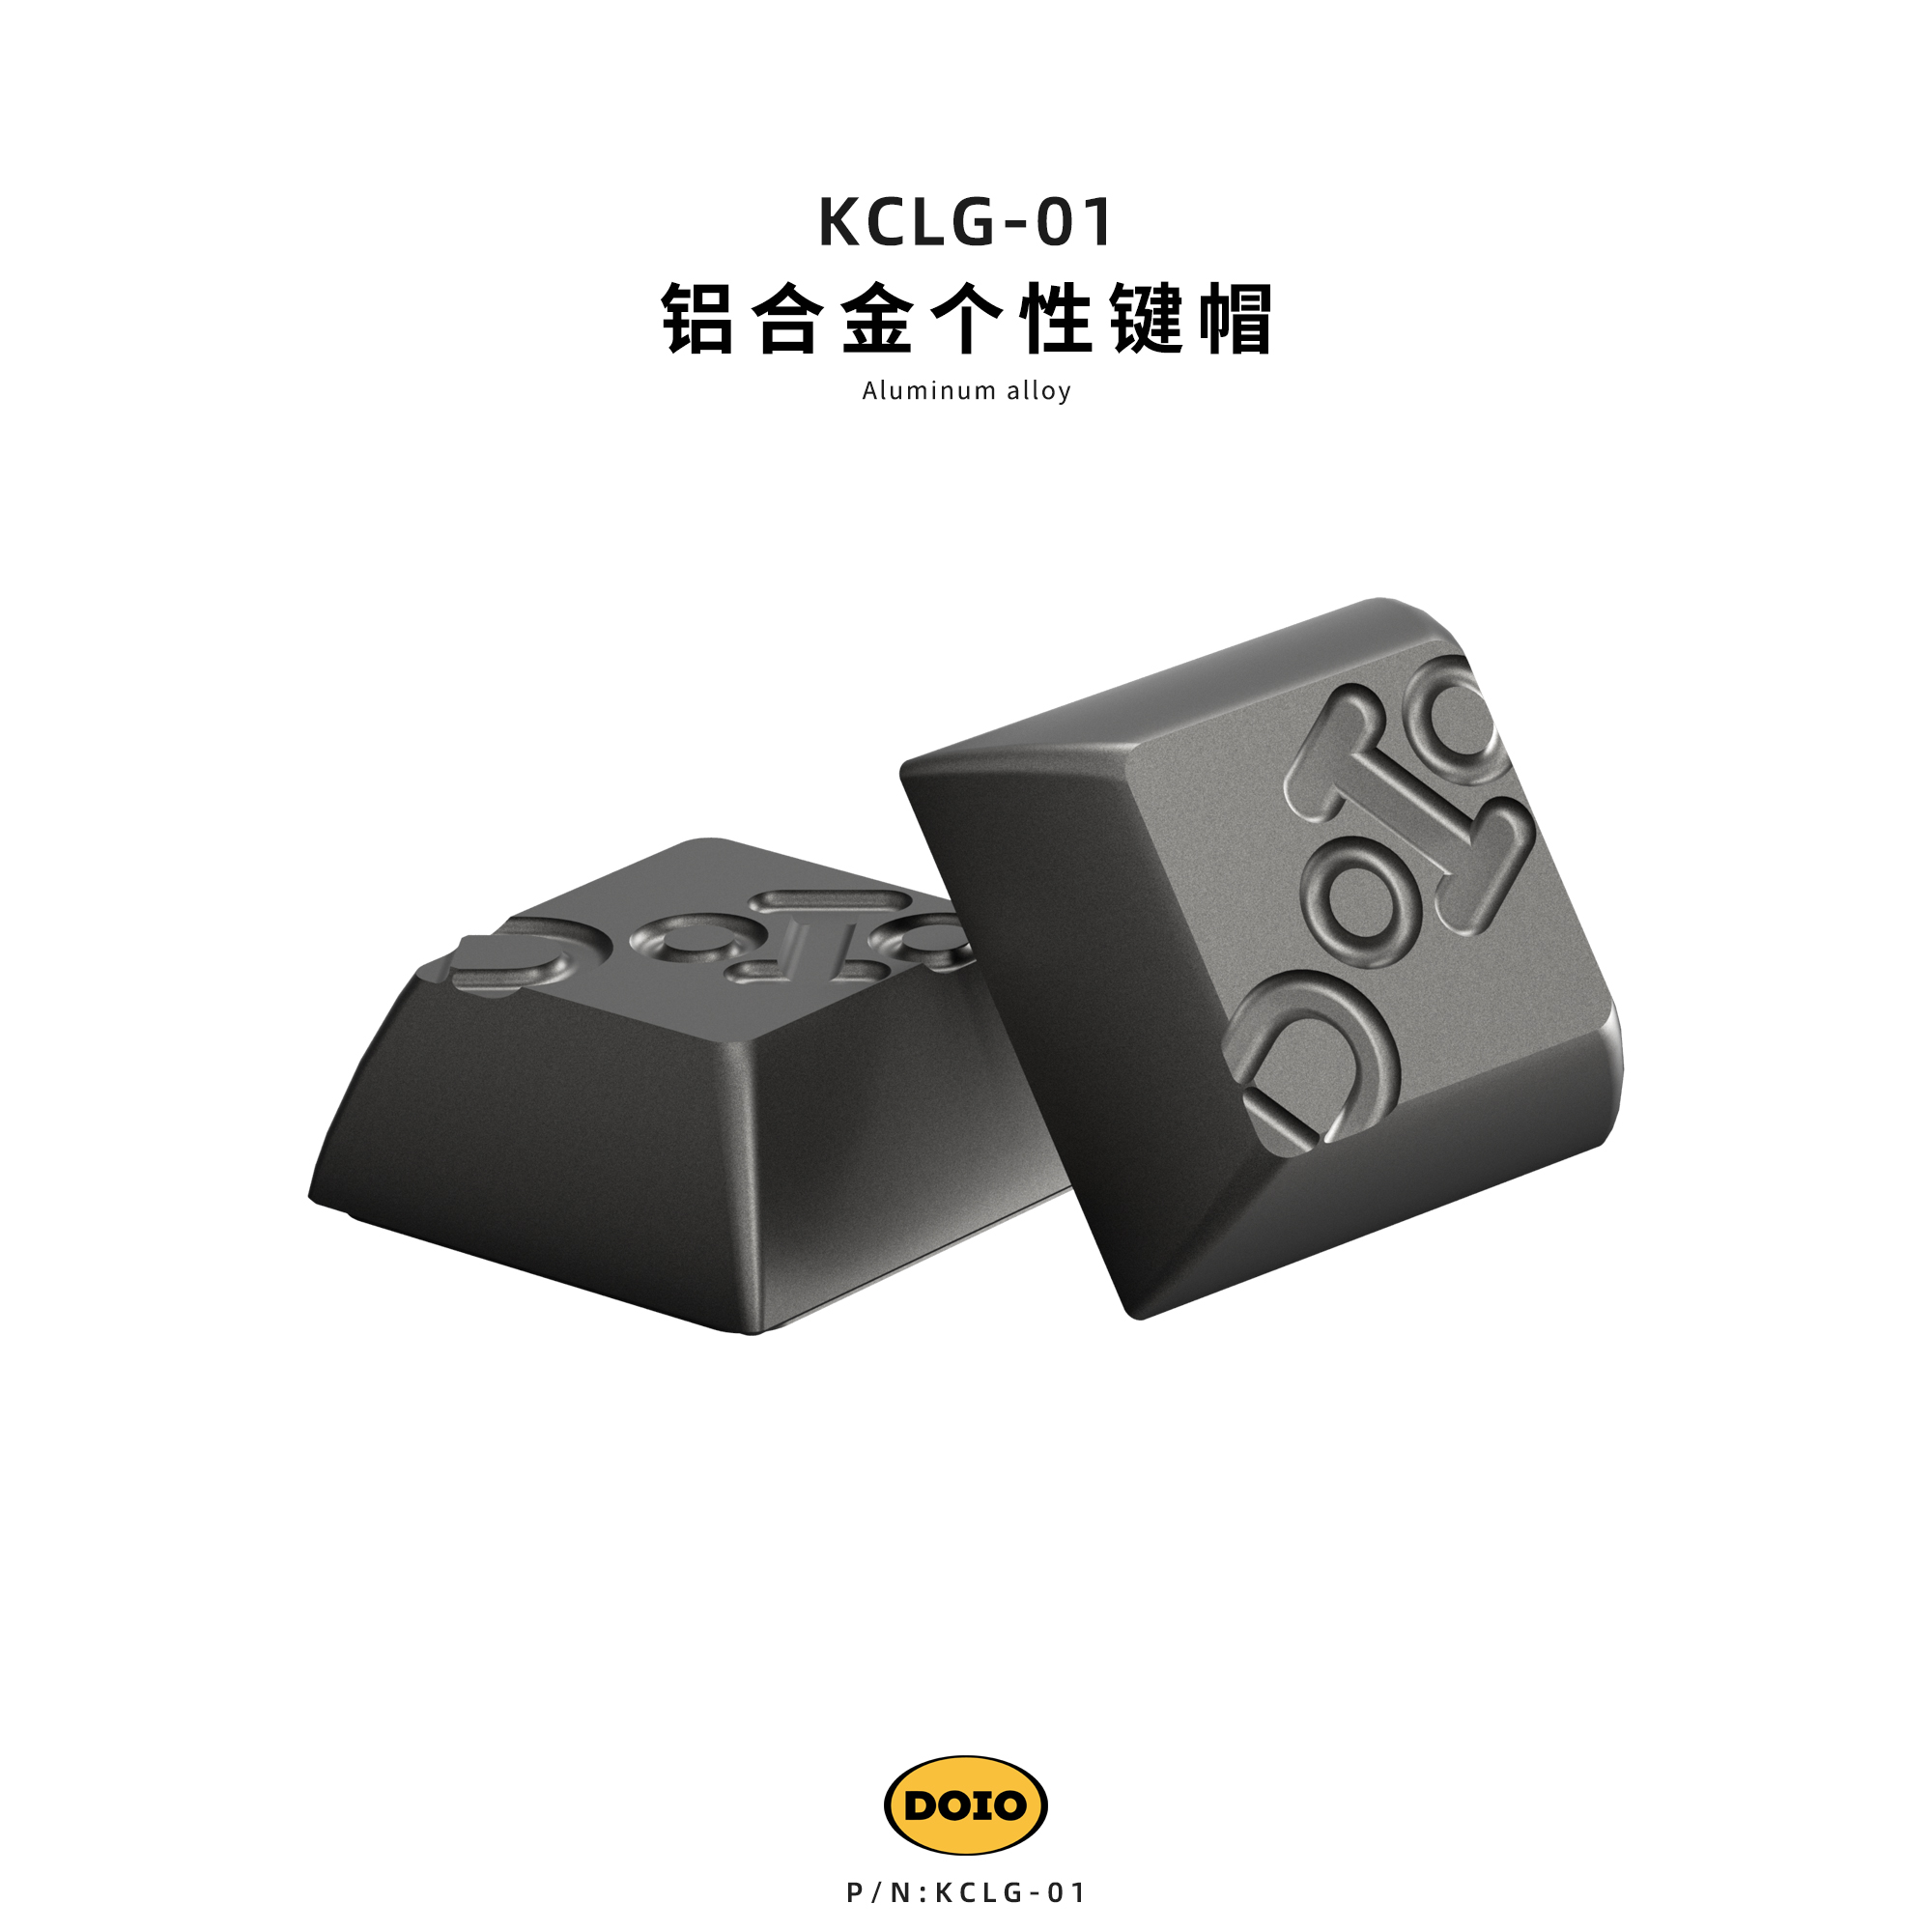 铝合金logo版键帽 KCLG